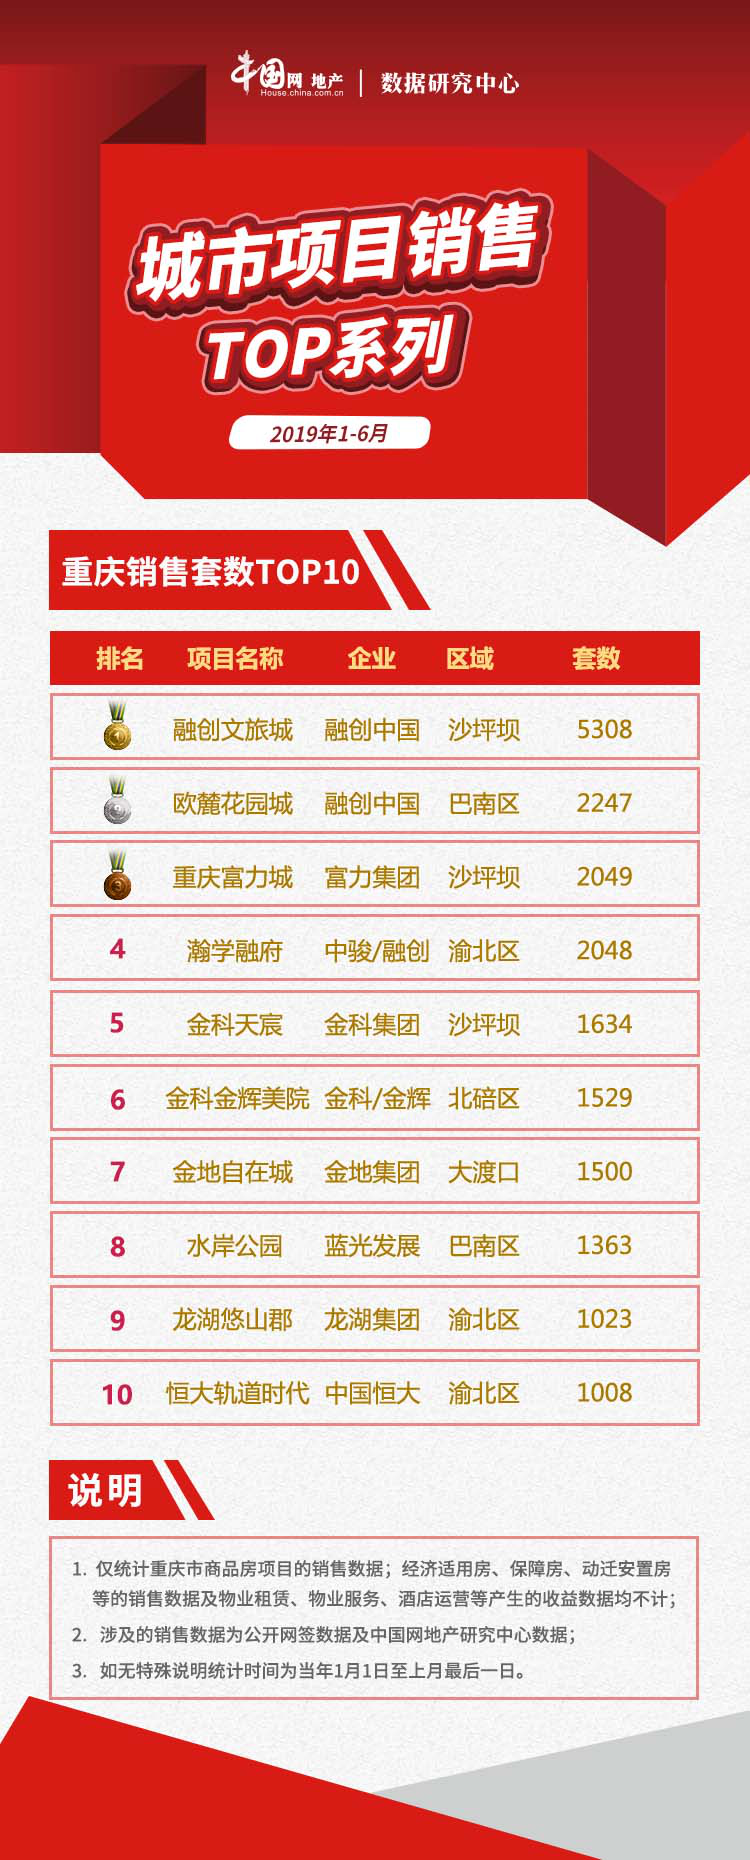 2019年1-6月重庆项目销售业绩TOP10  量价双升，供应创年内新高-中国网地产